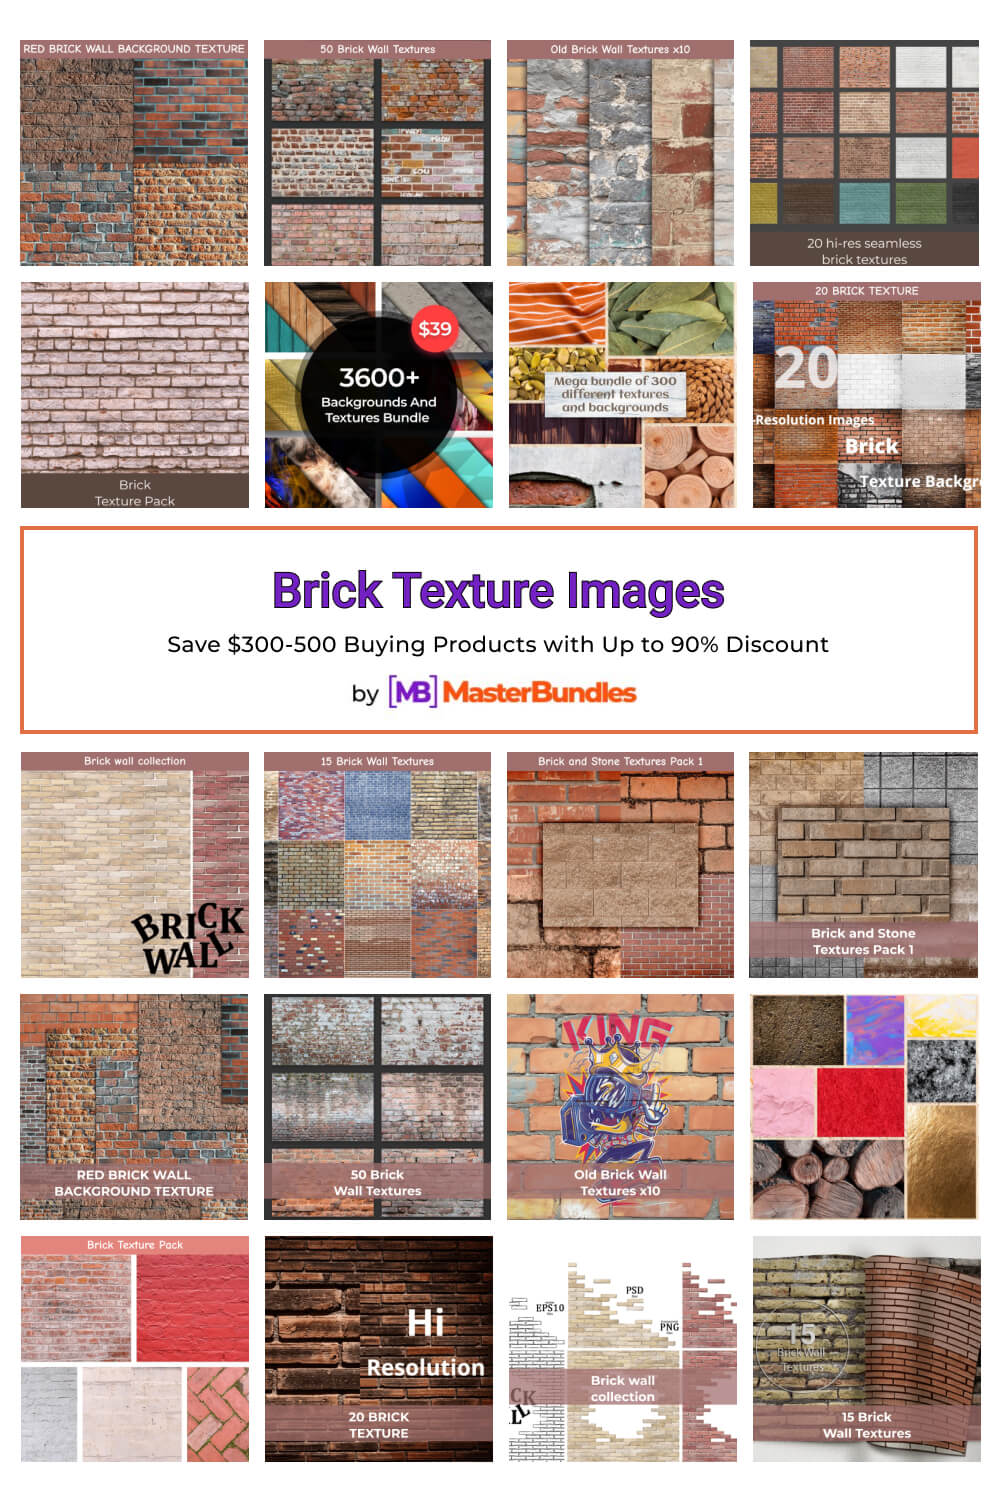 brick texture images pinterest image.